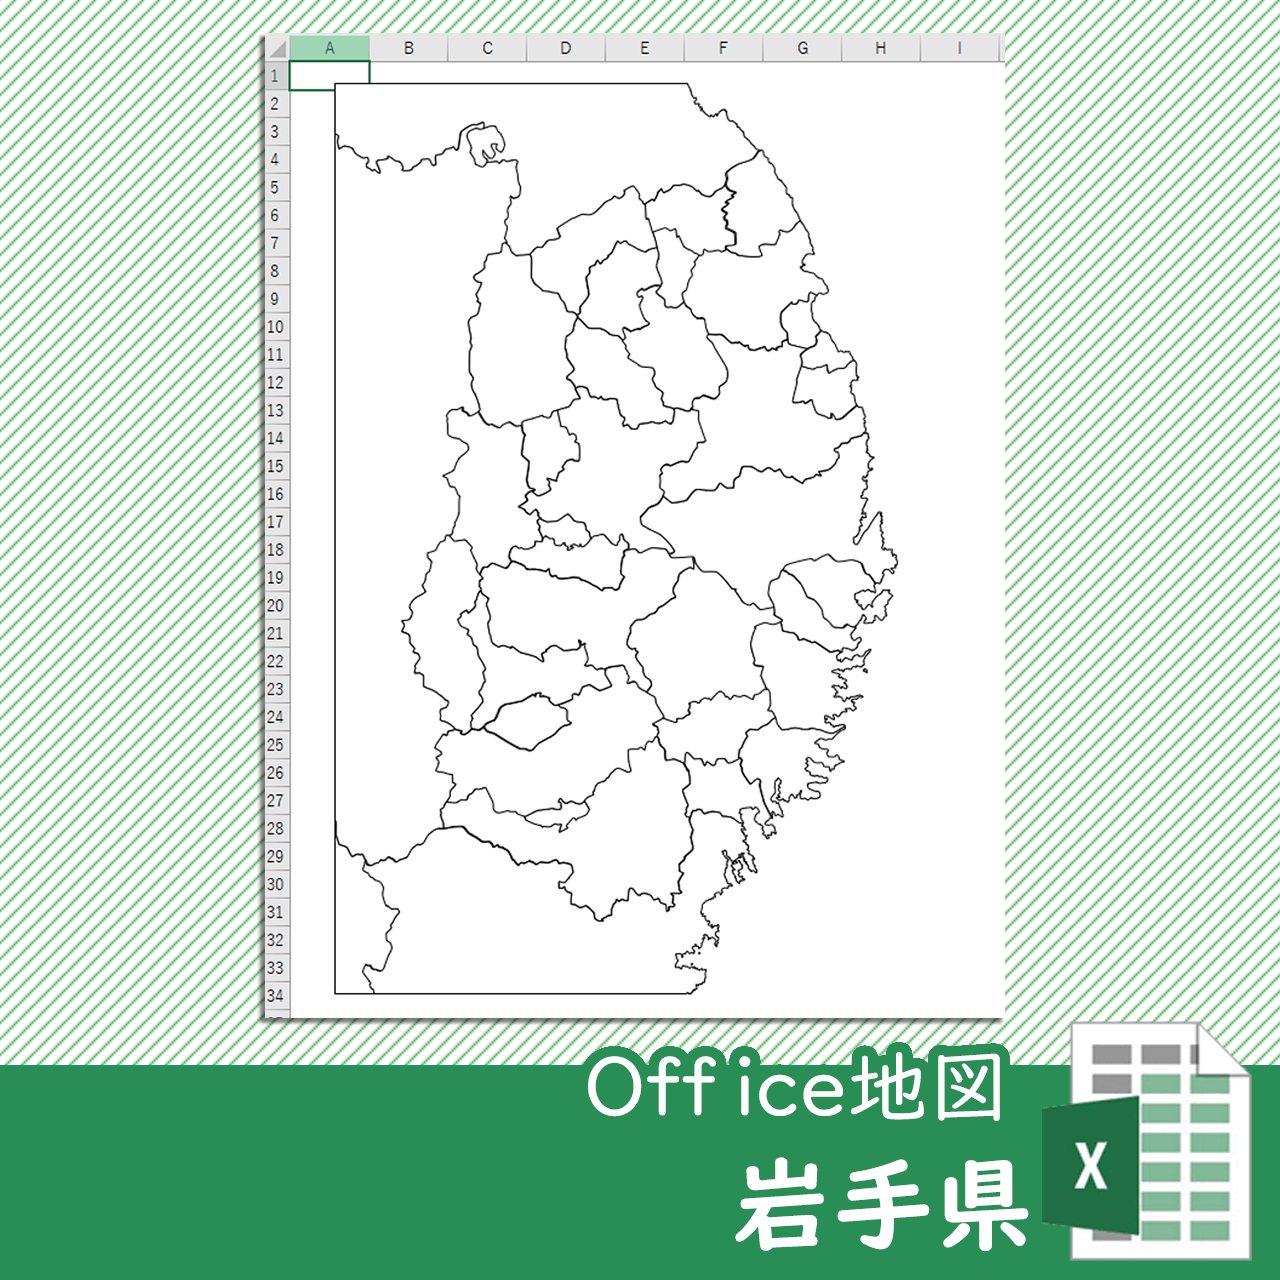 岩手県のOffice地図のサムネイル